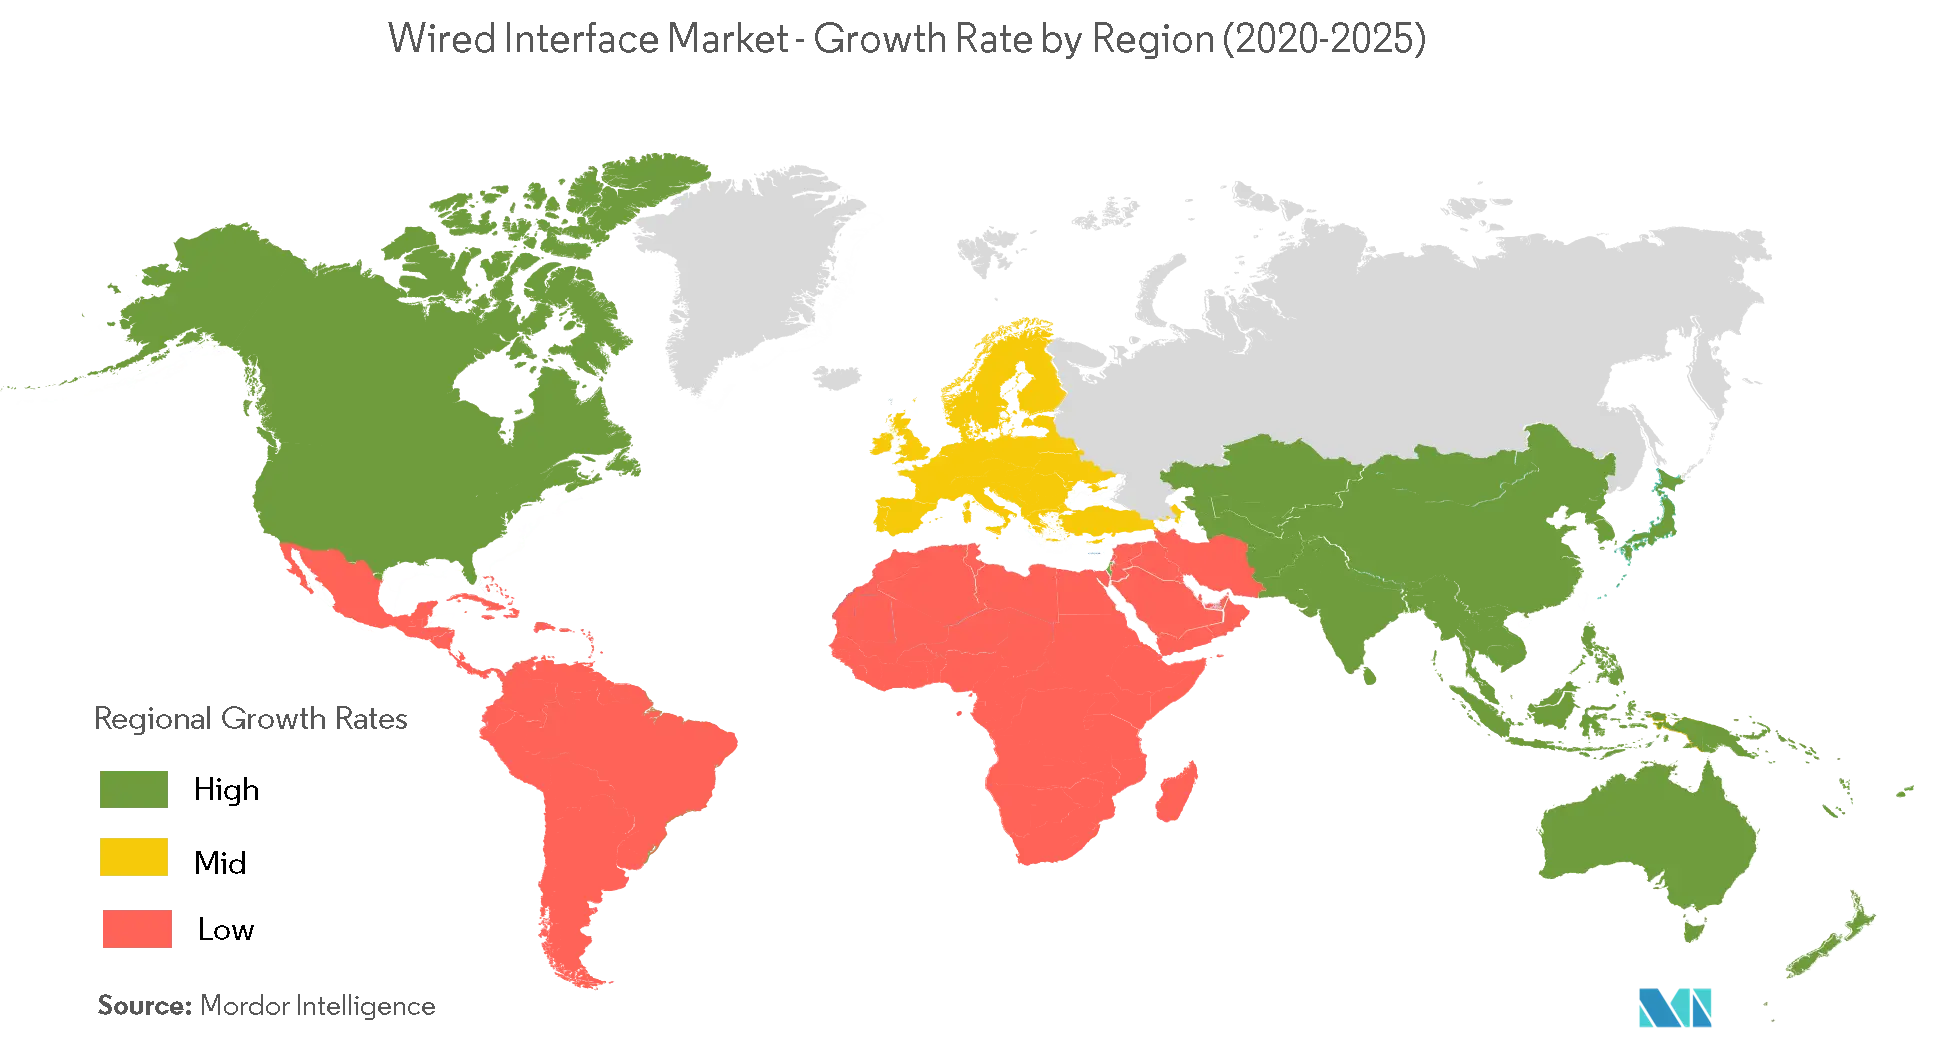 Рынок проводных интерфейсов темпы роста по регионам (2020-2025 гг.)